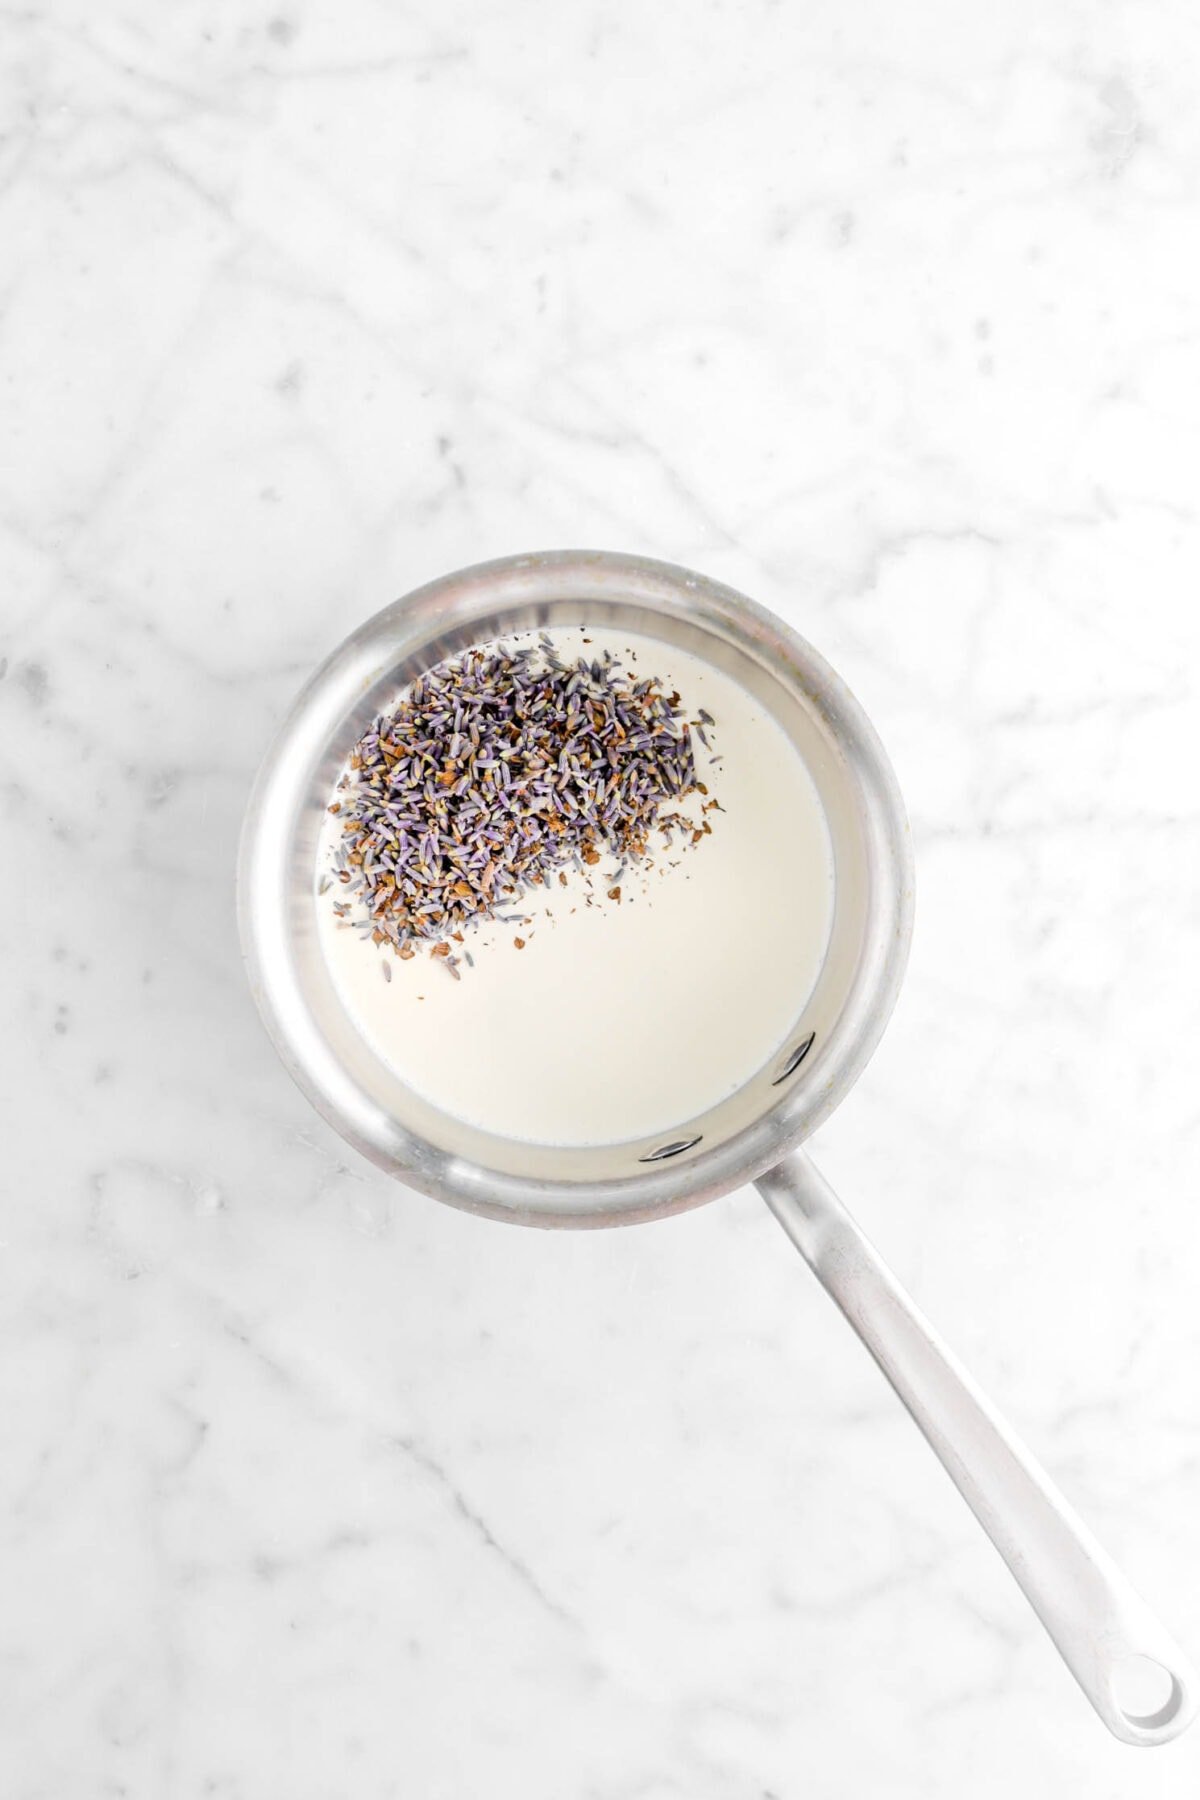 cream and lavender in small pot